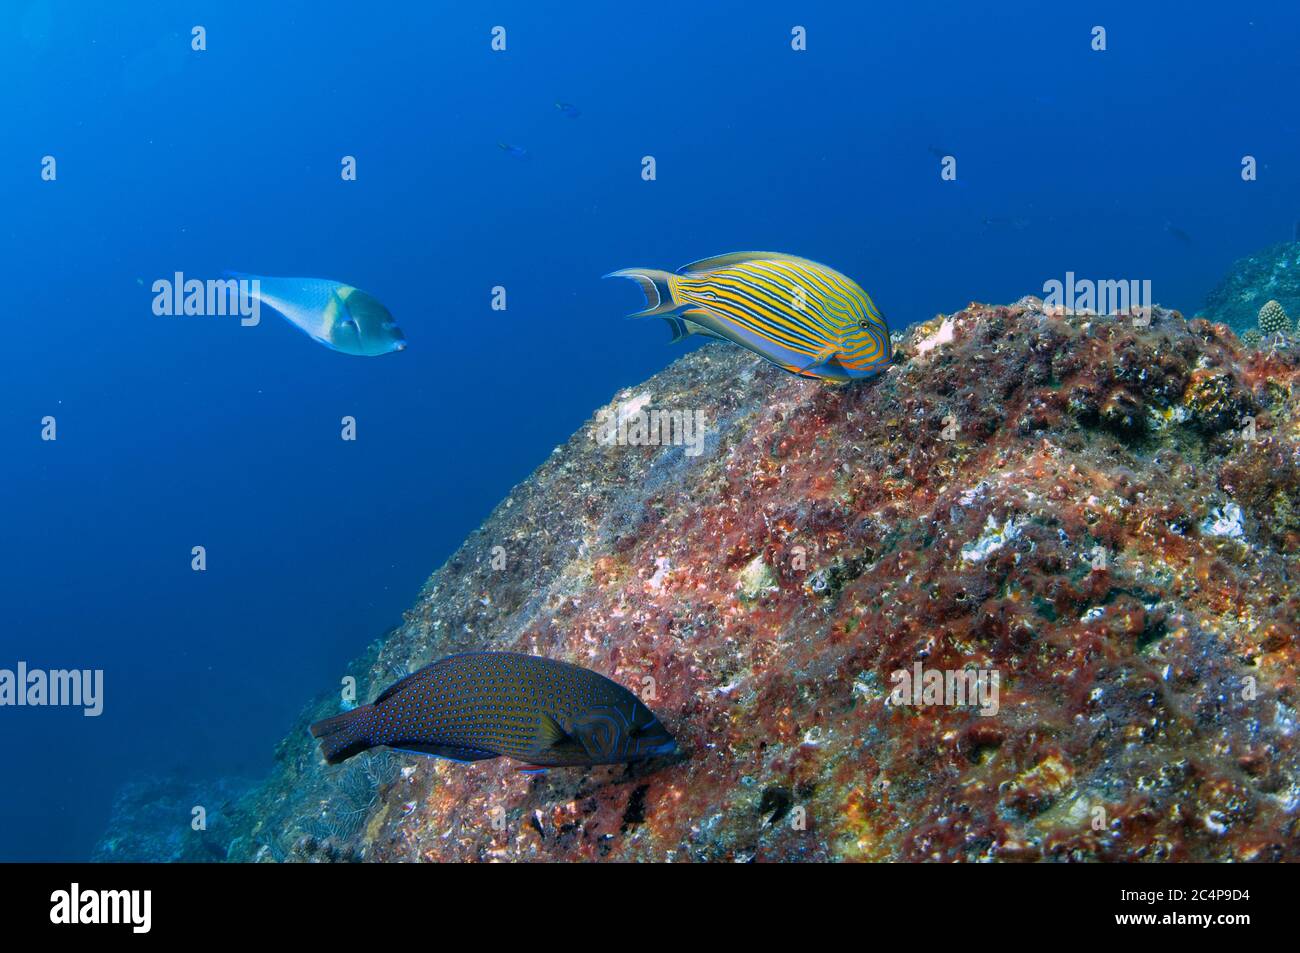 Striped surgeonfish, Acanthurus, lineatus, blue-spotted wrasse, Anampses caeruleopunctatus, and tubelip wrasse, Labrichthys unilineatus, feeding on co Stock Photo